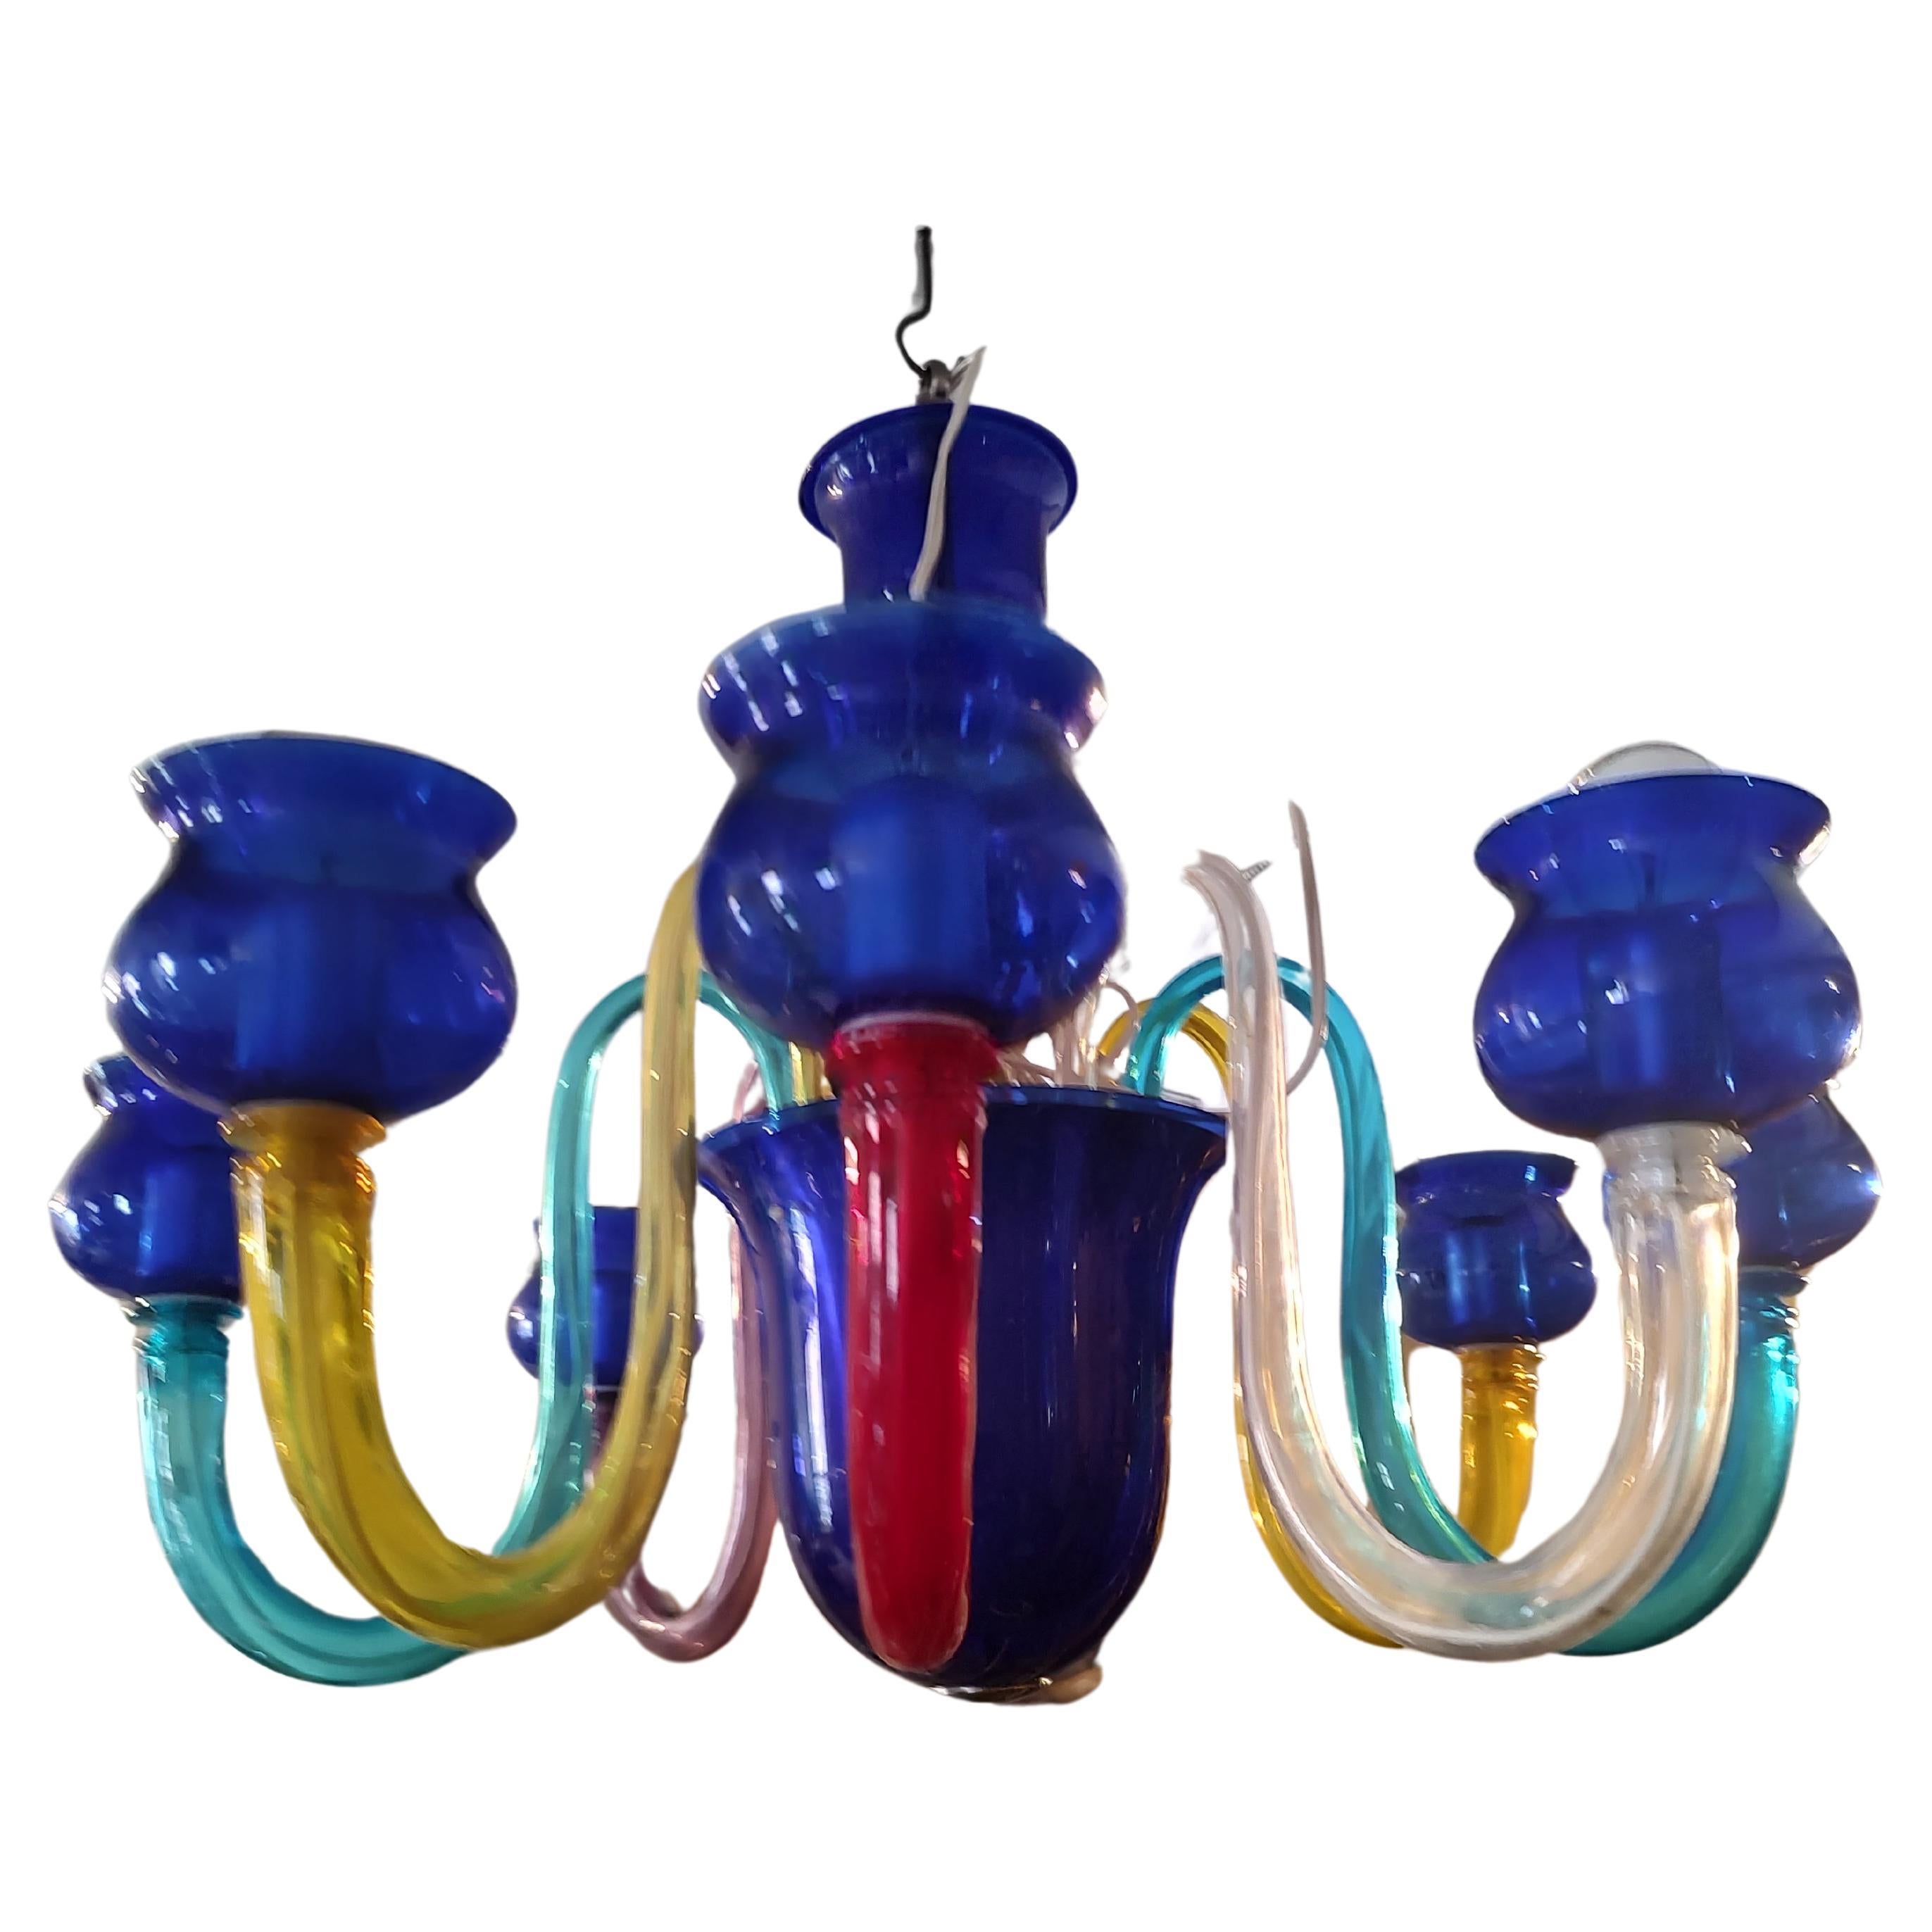 Fabuleux et élégant lustre vénitien à 8 bras de Murano. Huit bras colorés élégamment courbés, 2 rouges 2 jaunes 2 bleus 1 améthyste et 1 transparent composent le lustre avec 8 coupelles bleues qui entourent les ampoules. Des pièces centrales bleues